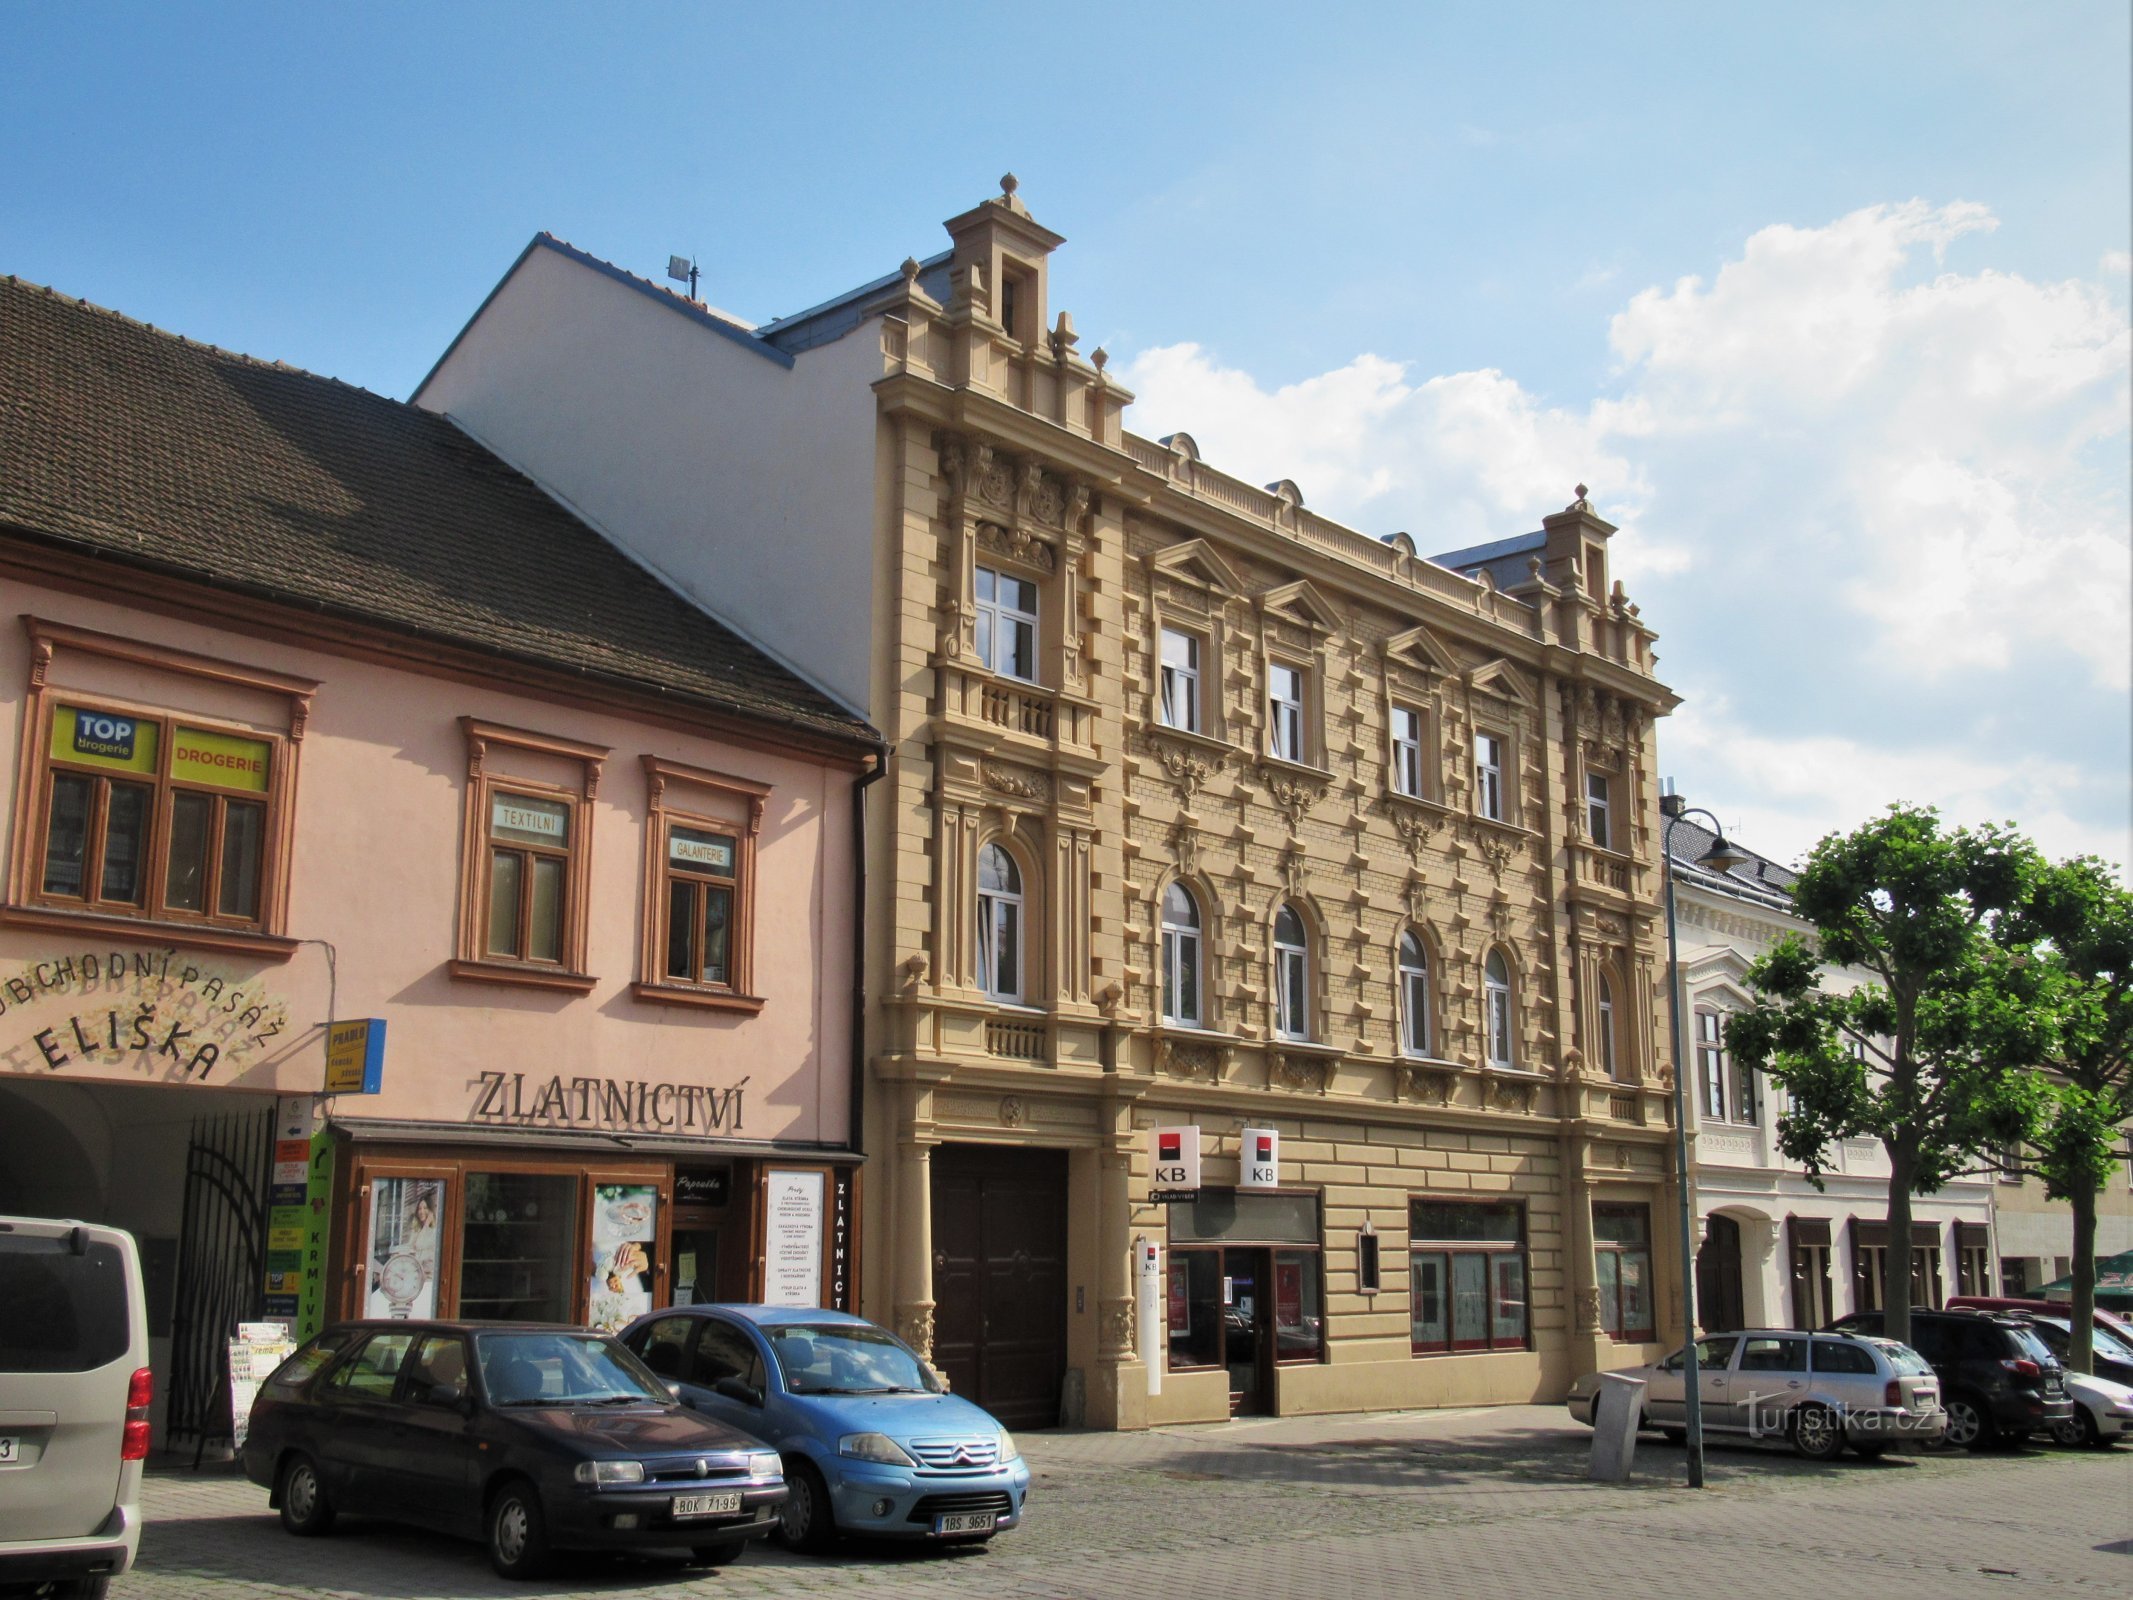 Židlochovice - house No. 28 on Náměstí Míru